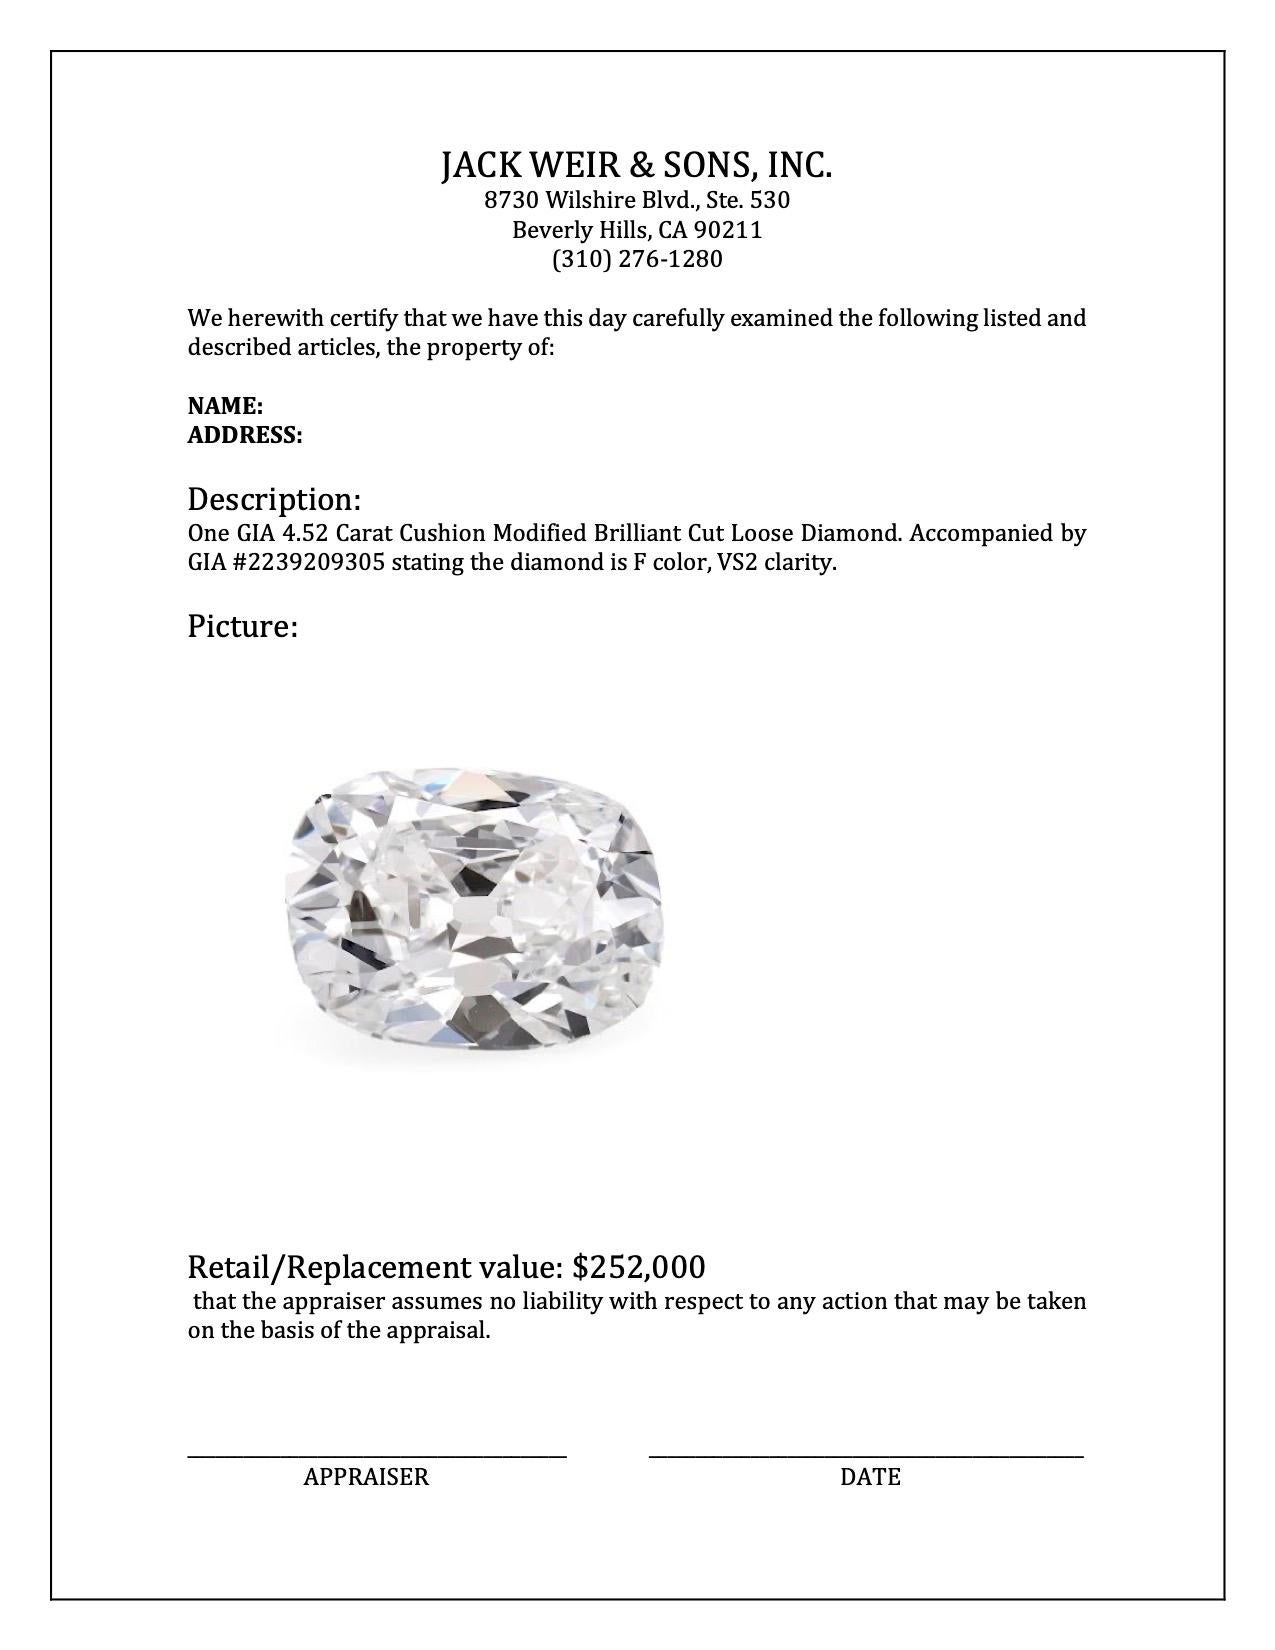 Diamant brut GIA de 4,52 carats à taille brillant modifiée et coussin Bon état - En vente à Beverly Hills, CA